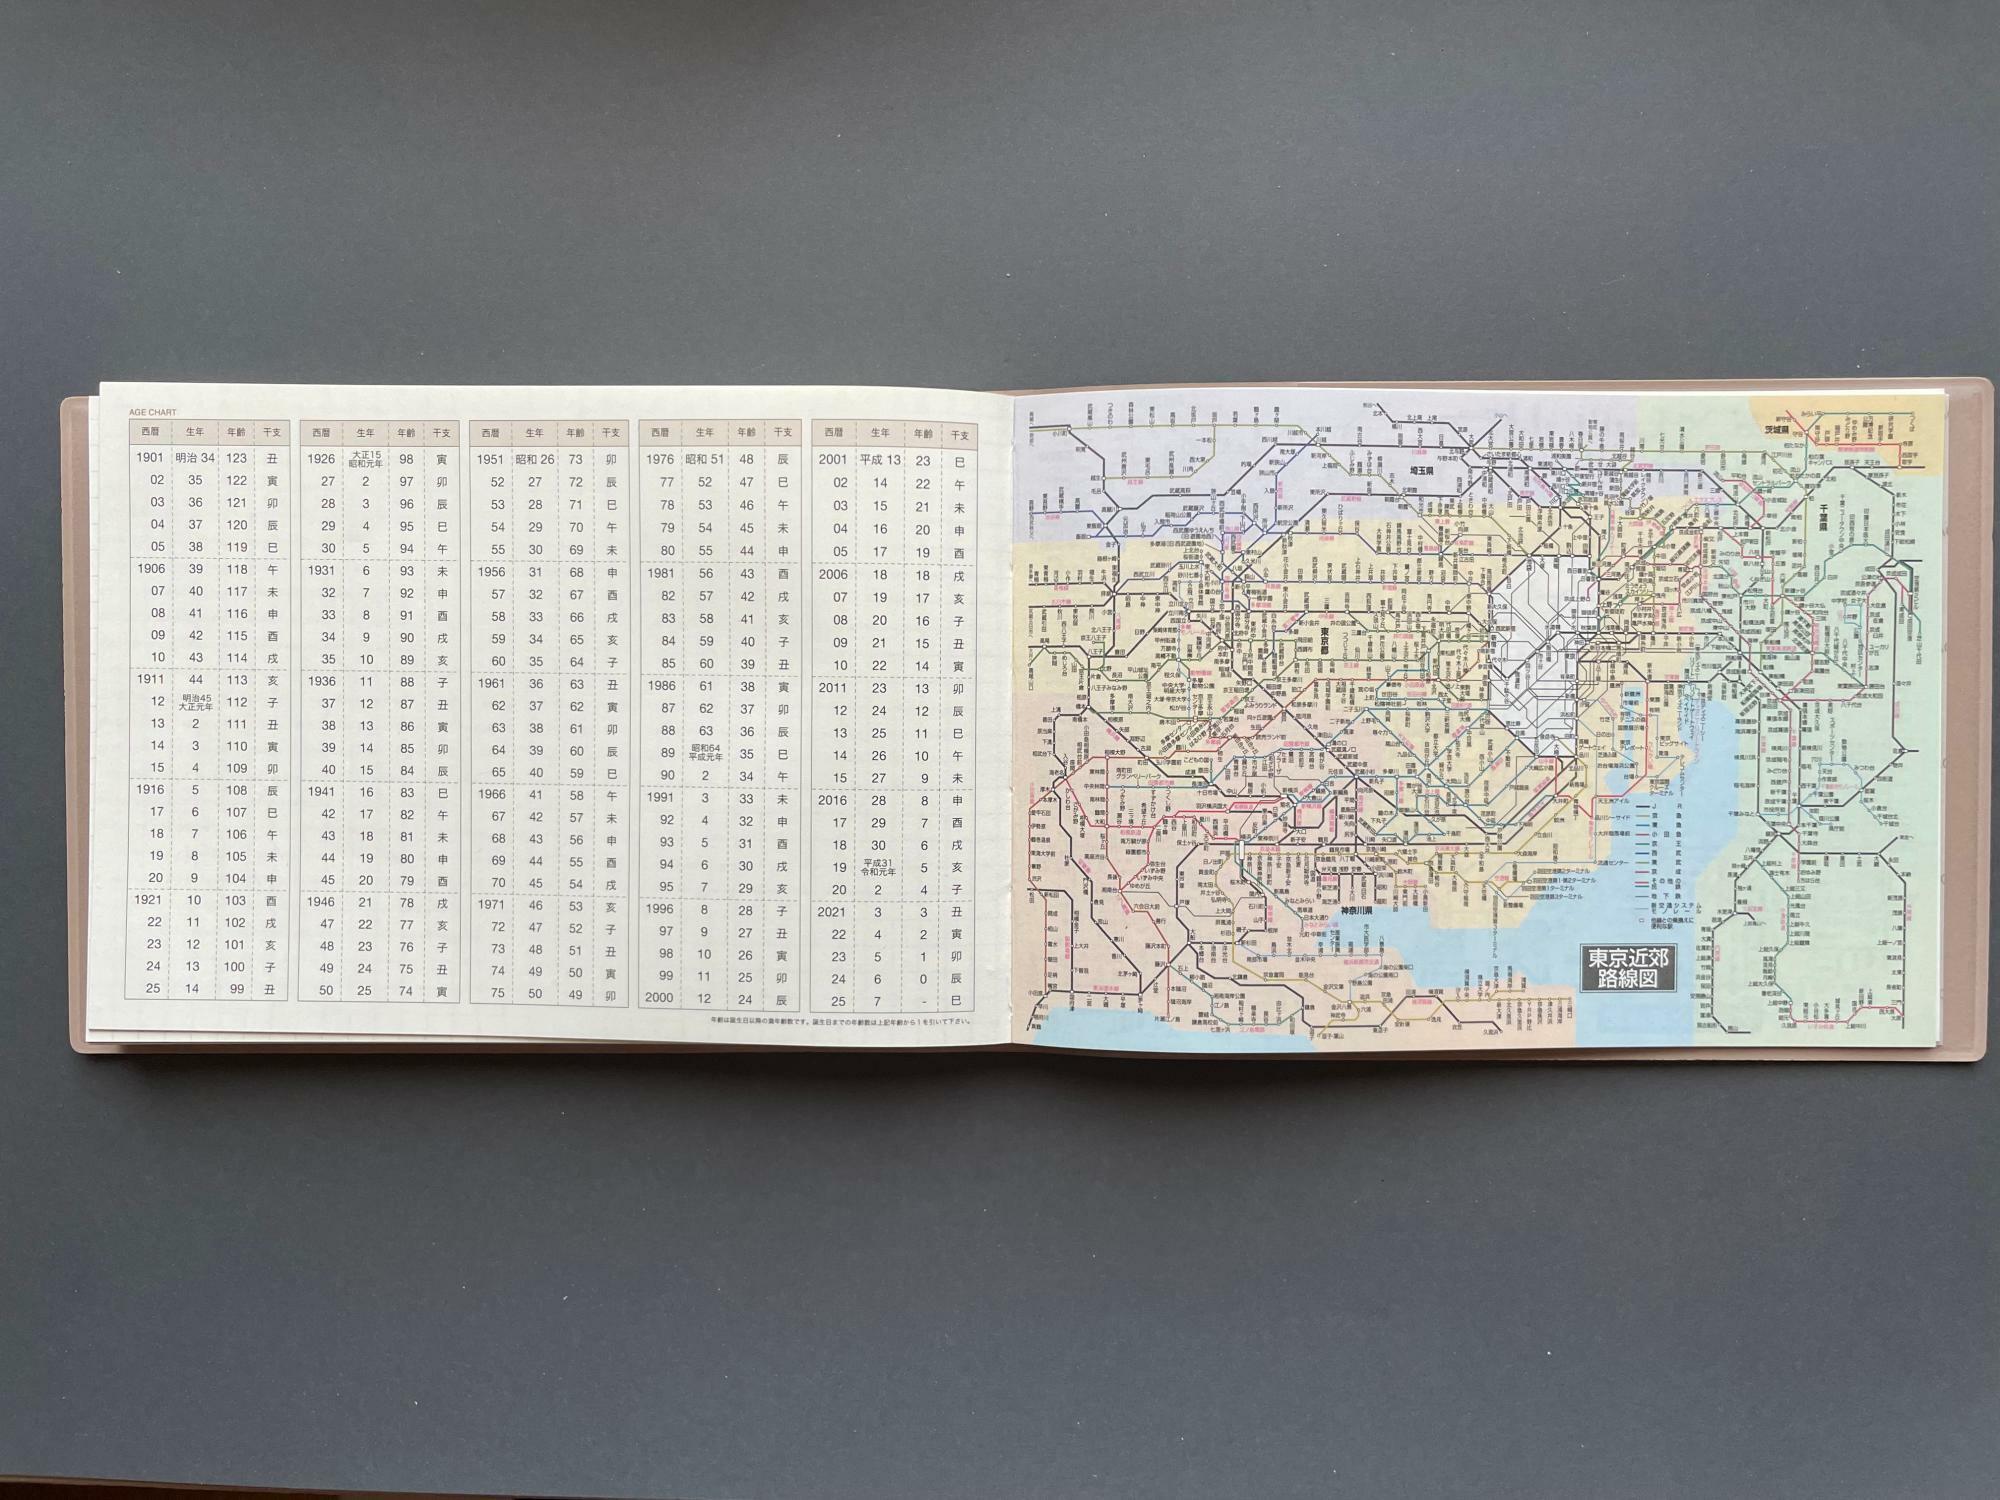 巻末の便覧。年齢早見表、東京広域路線図、大阪広域路線図に、各都市の地下鉄路線図が掲載されている